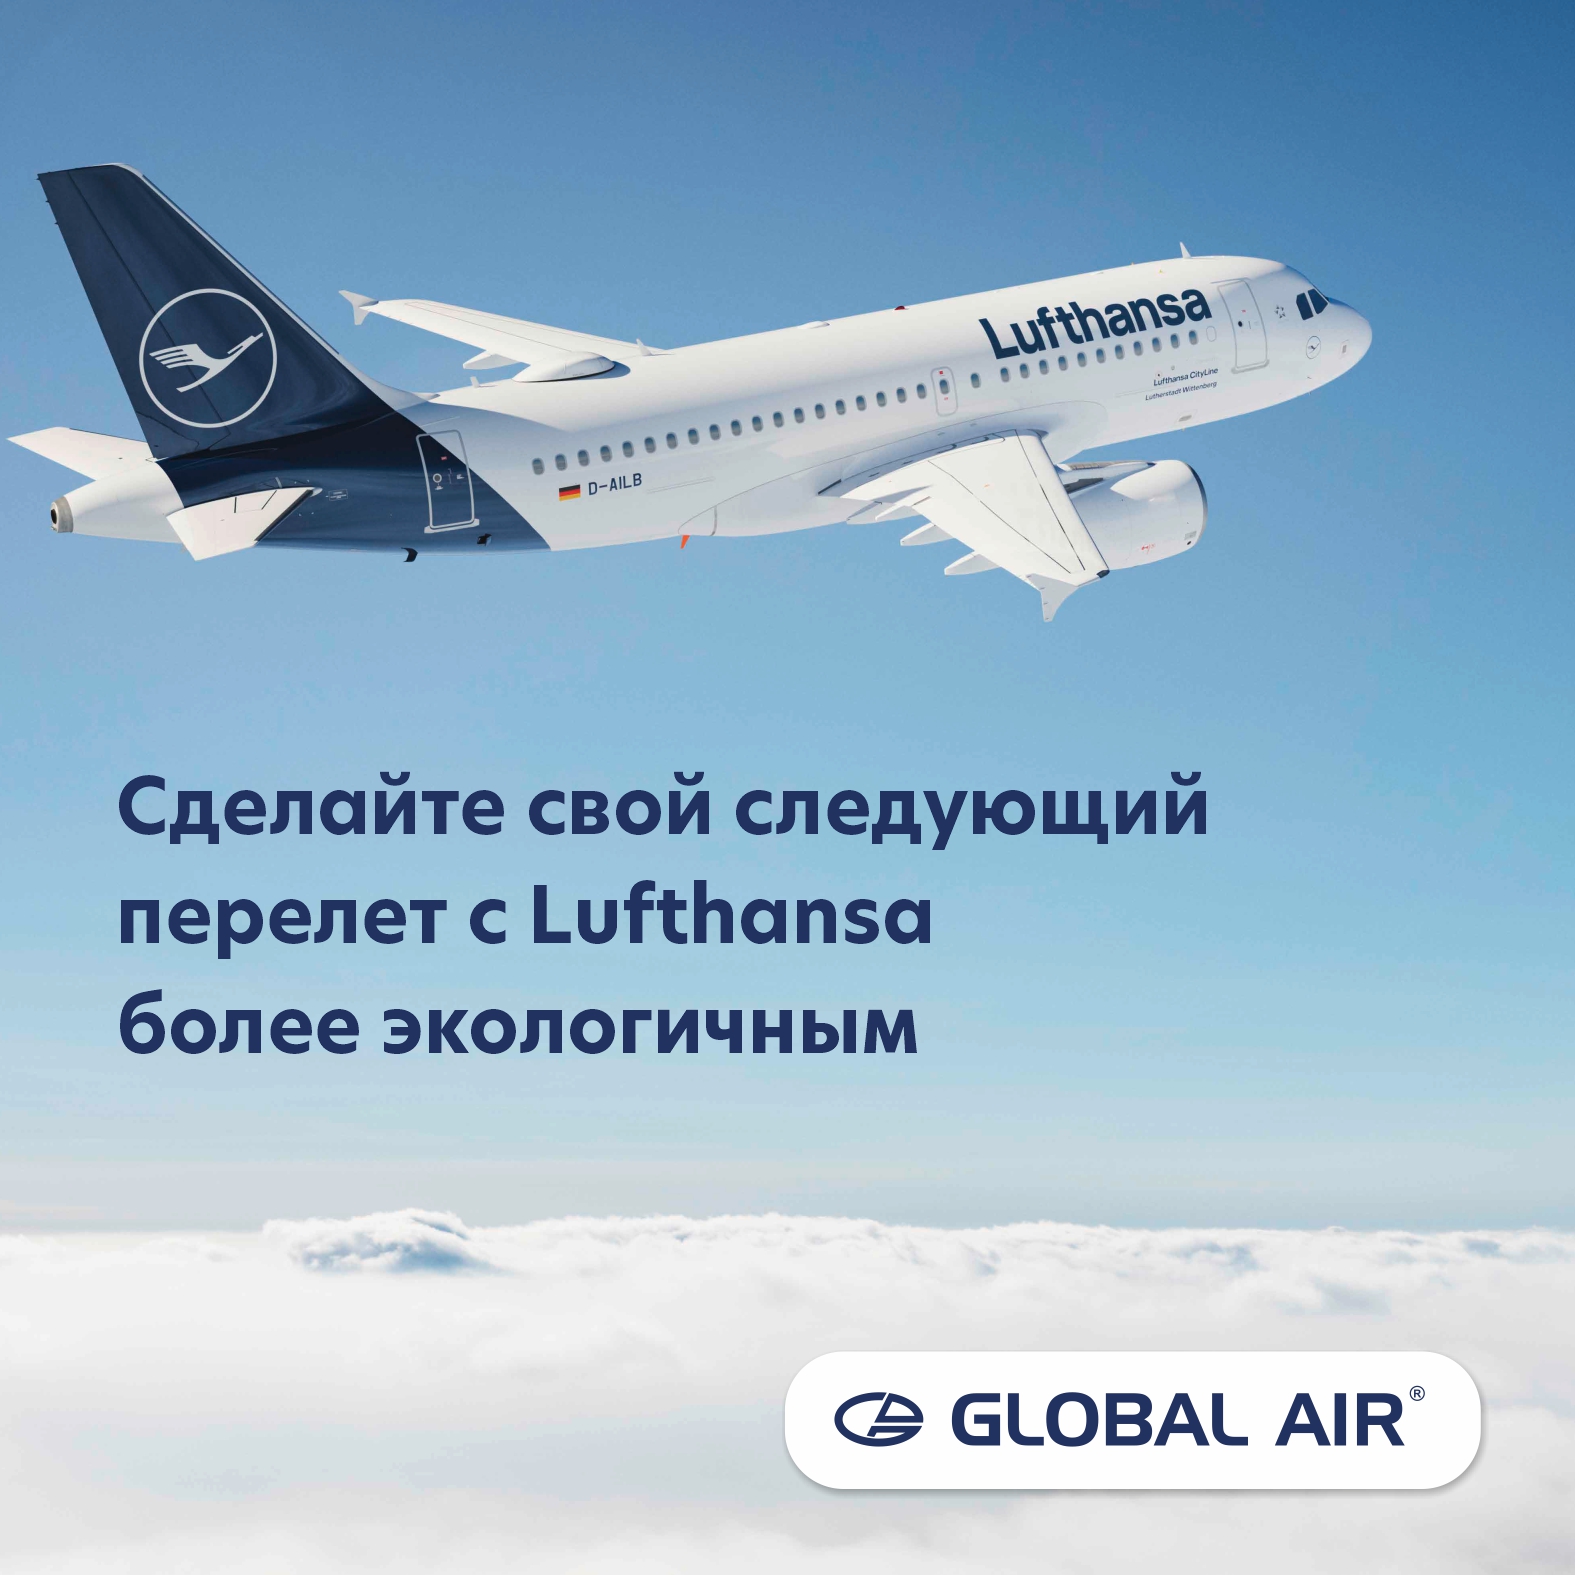 Сделайте свой следующий перелет с Lufthansa более экологичным